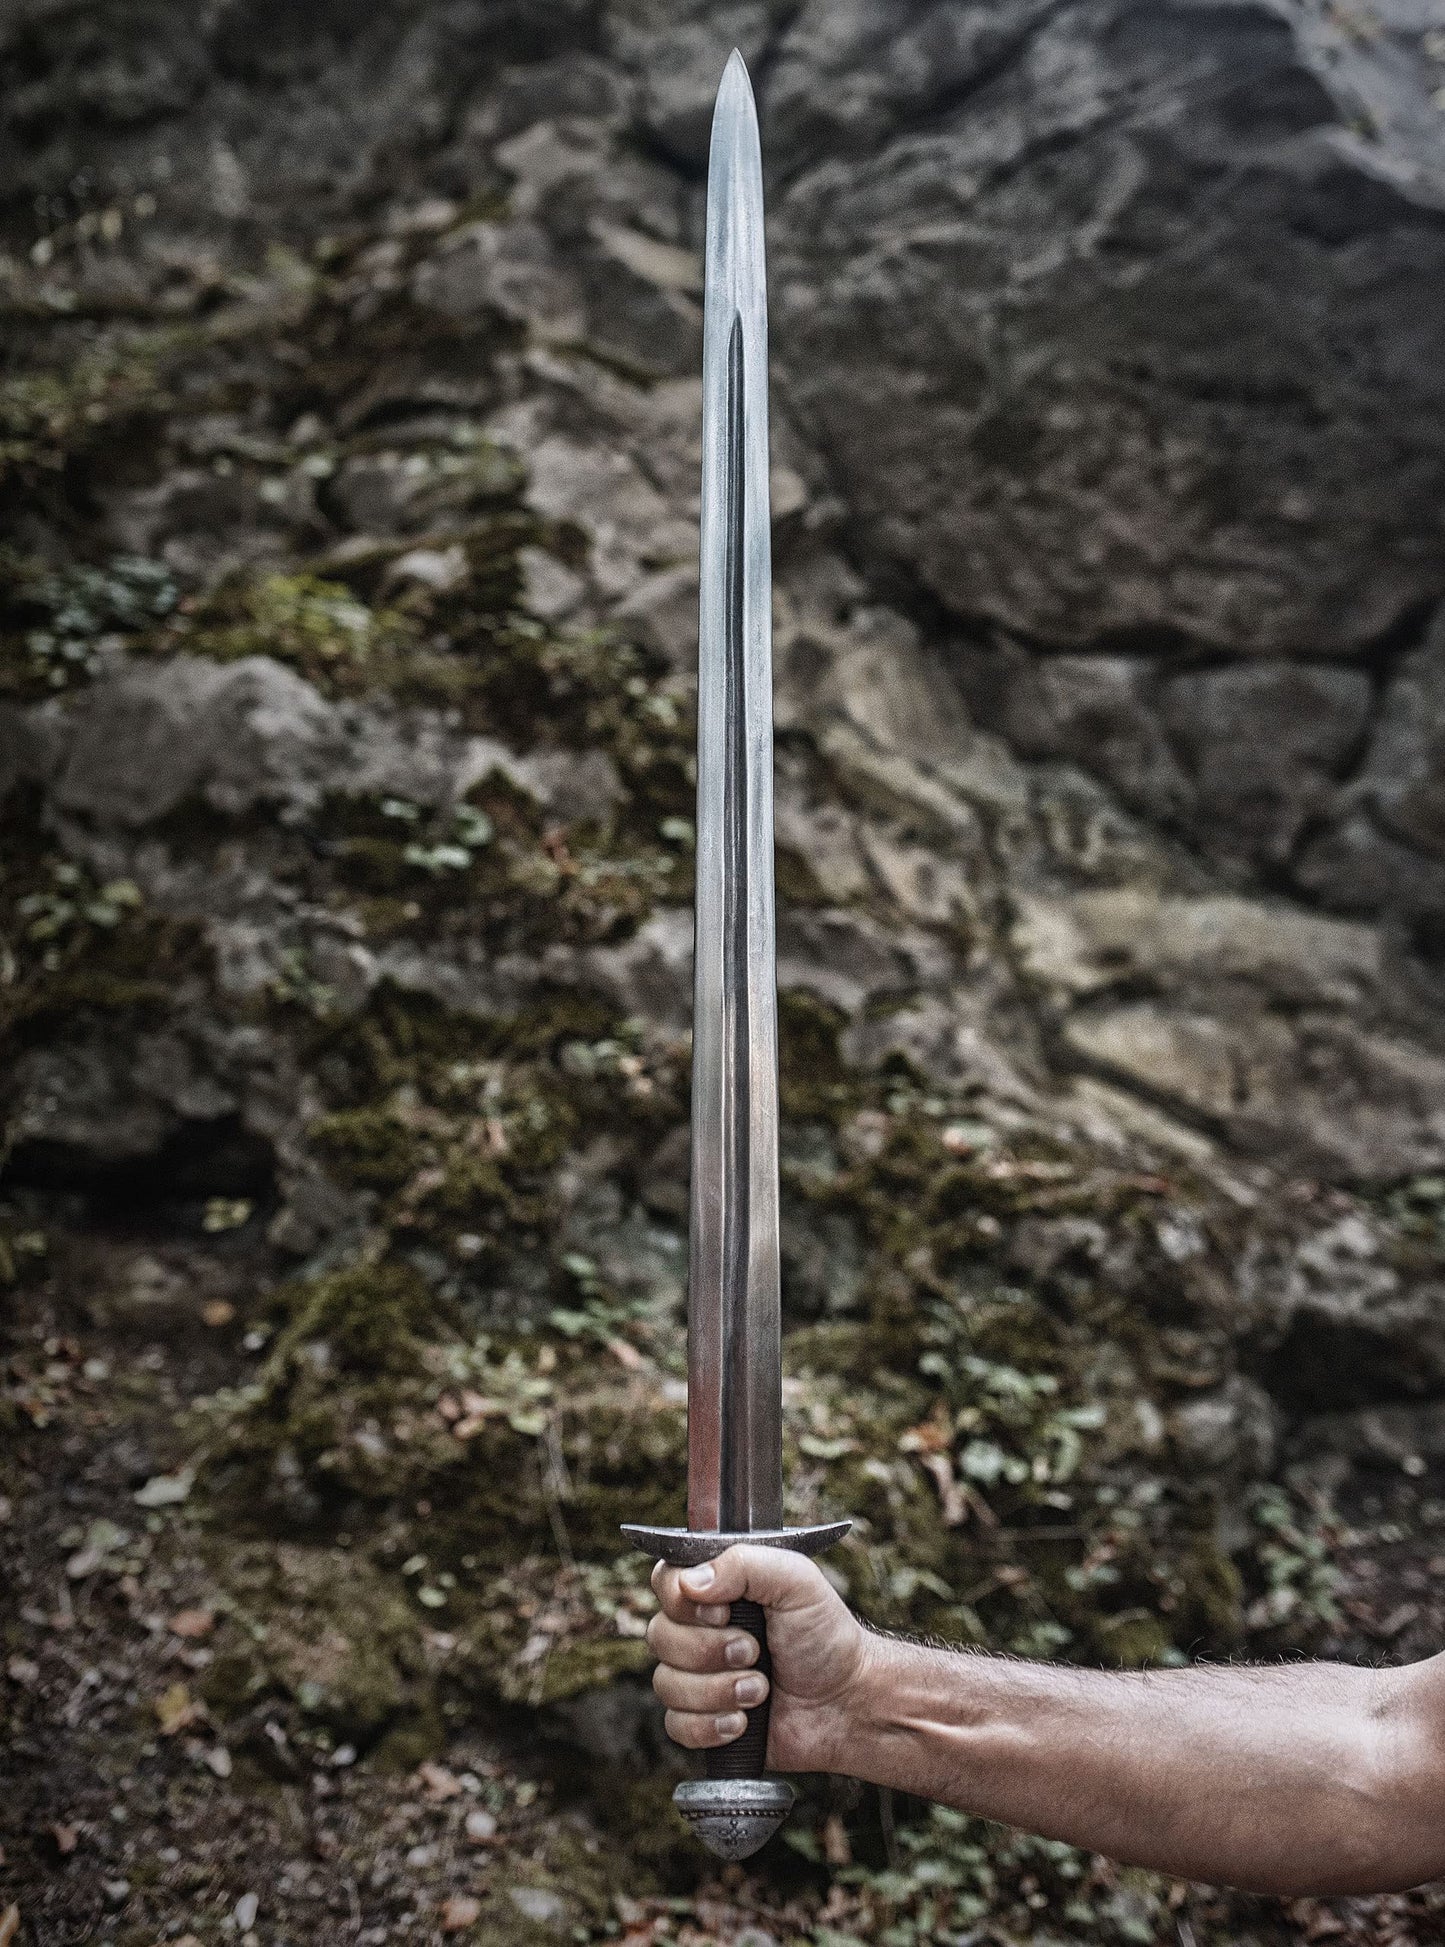 Spring Steel Viking Sword Keurnbut